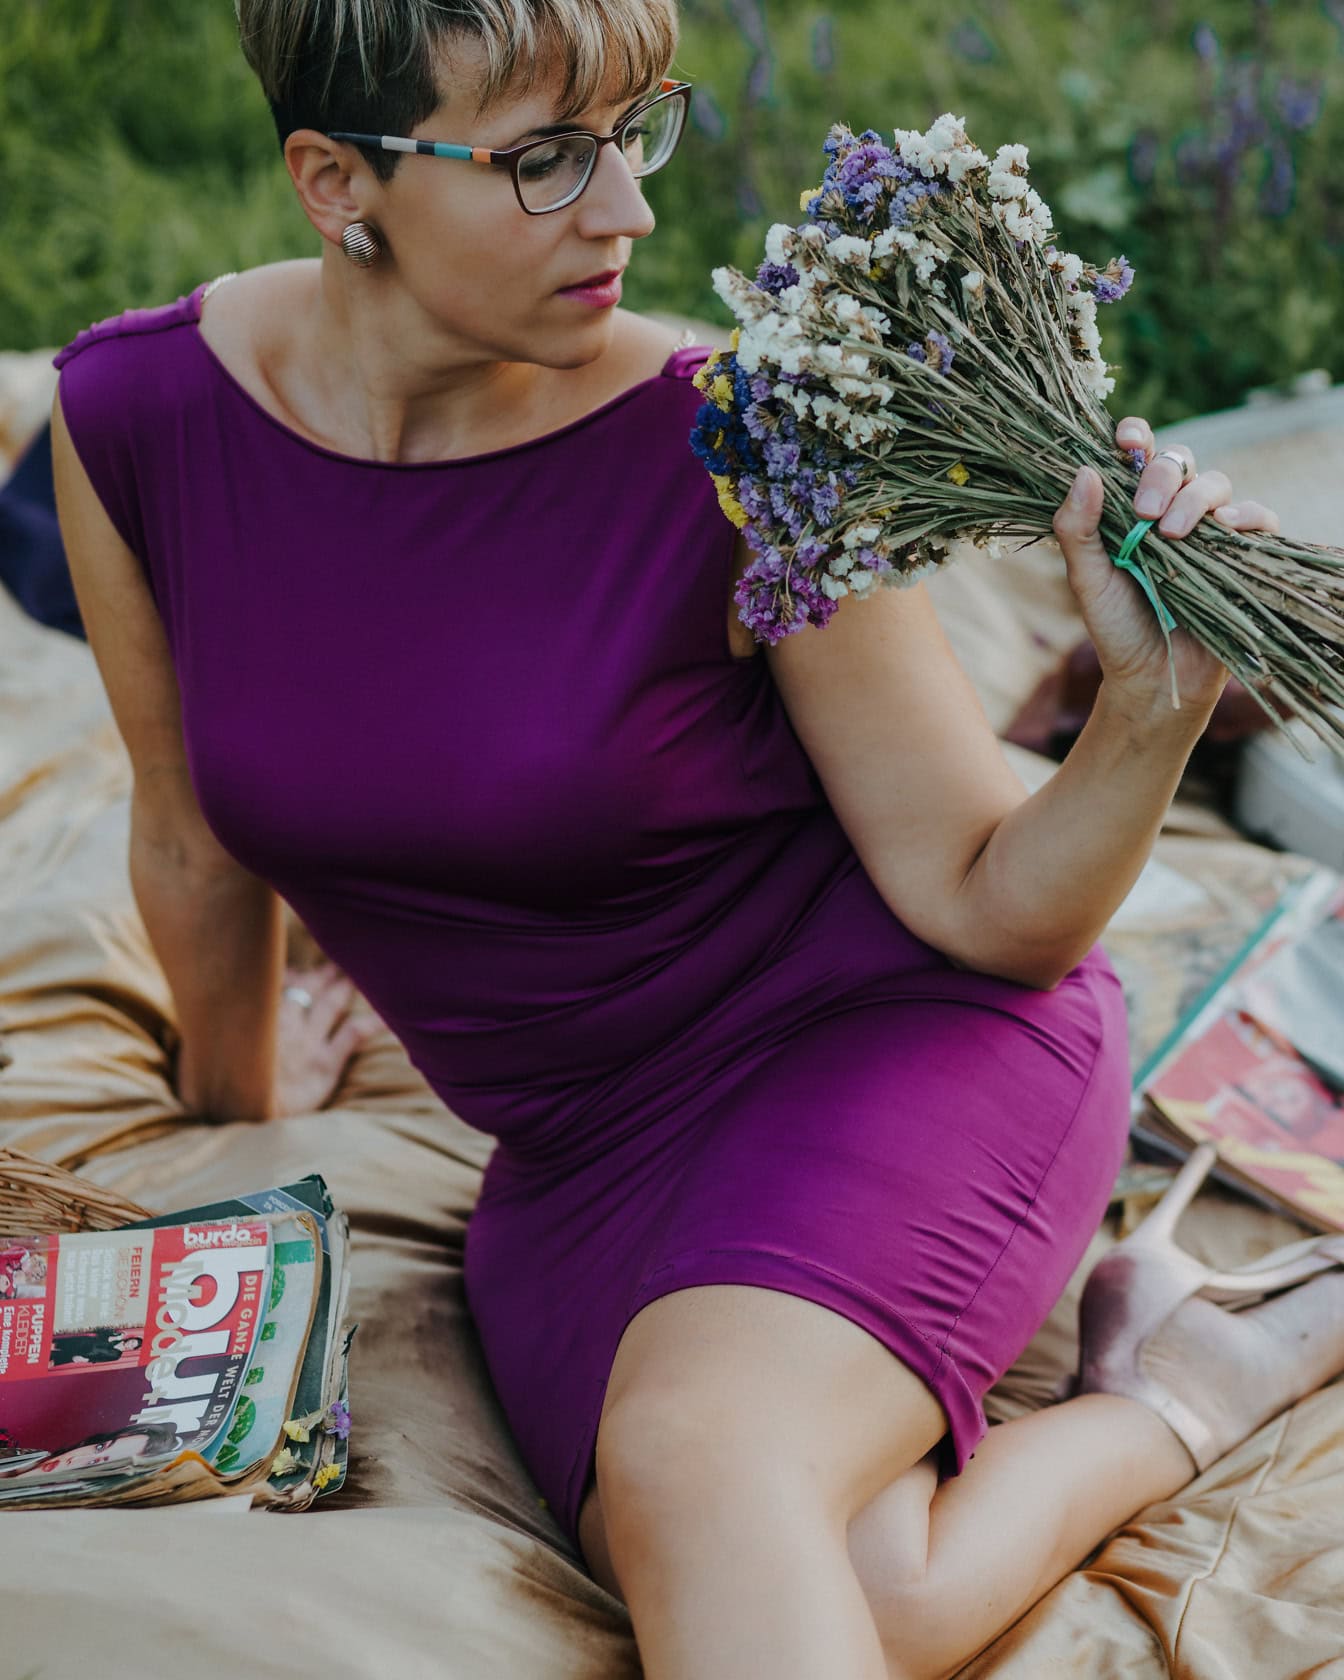 Knappe vrouw in een purpere kleding met boeket veldbloemen terwijl ze op picknickdeken zit